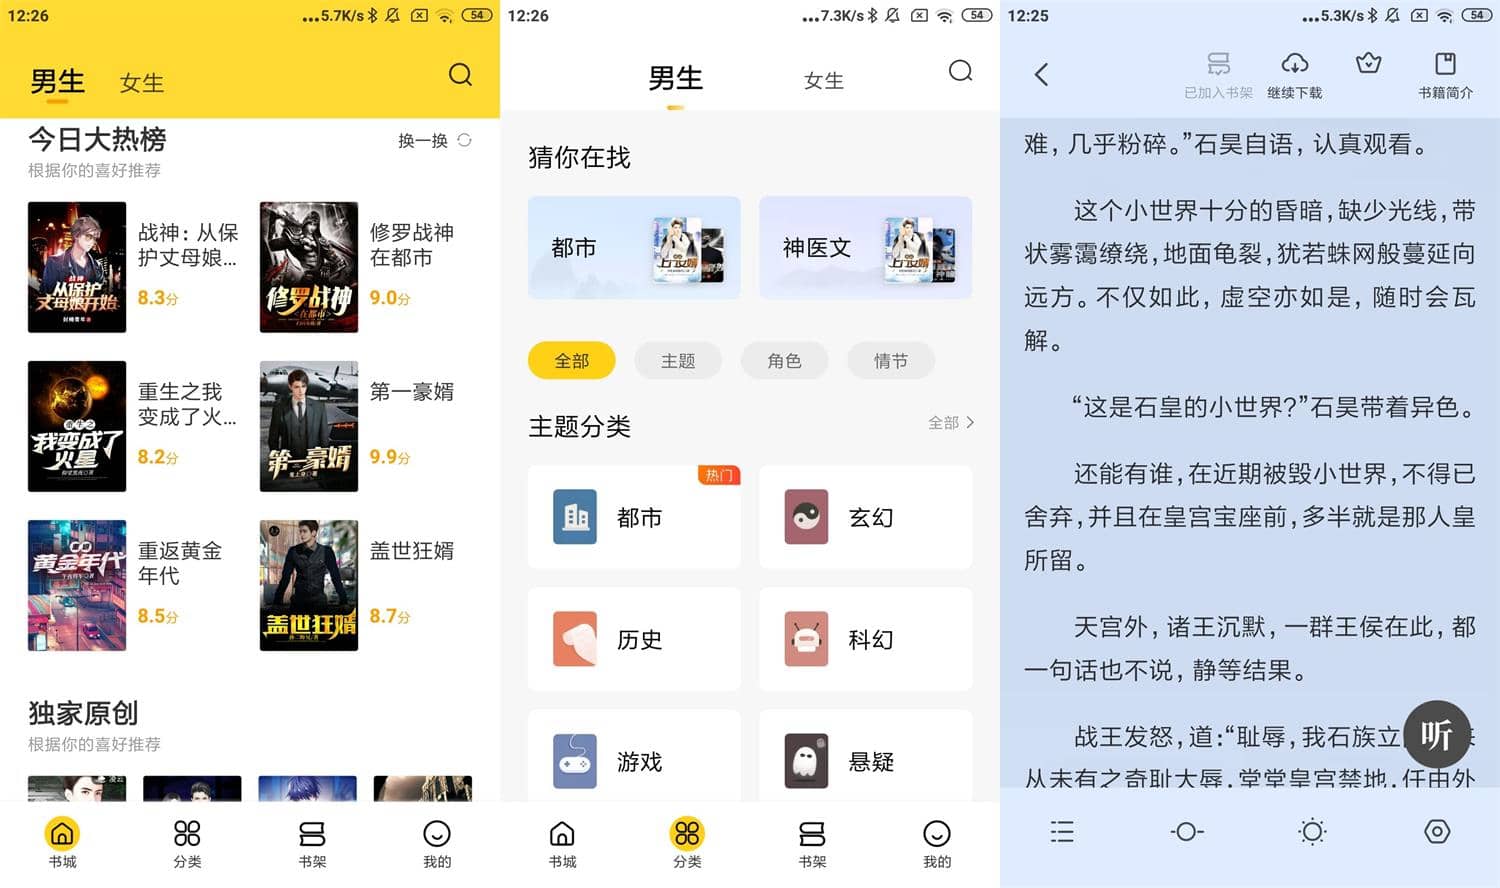 Android 全民小说 v7.24.27 去广告VIP会员破解版-无痕哥's Blog